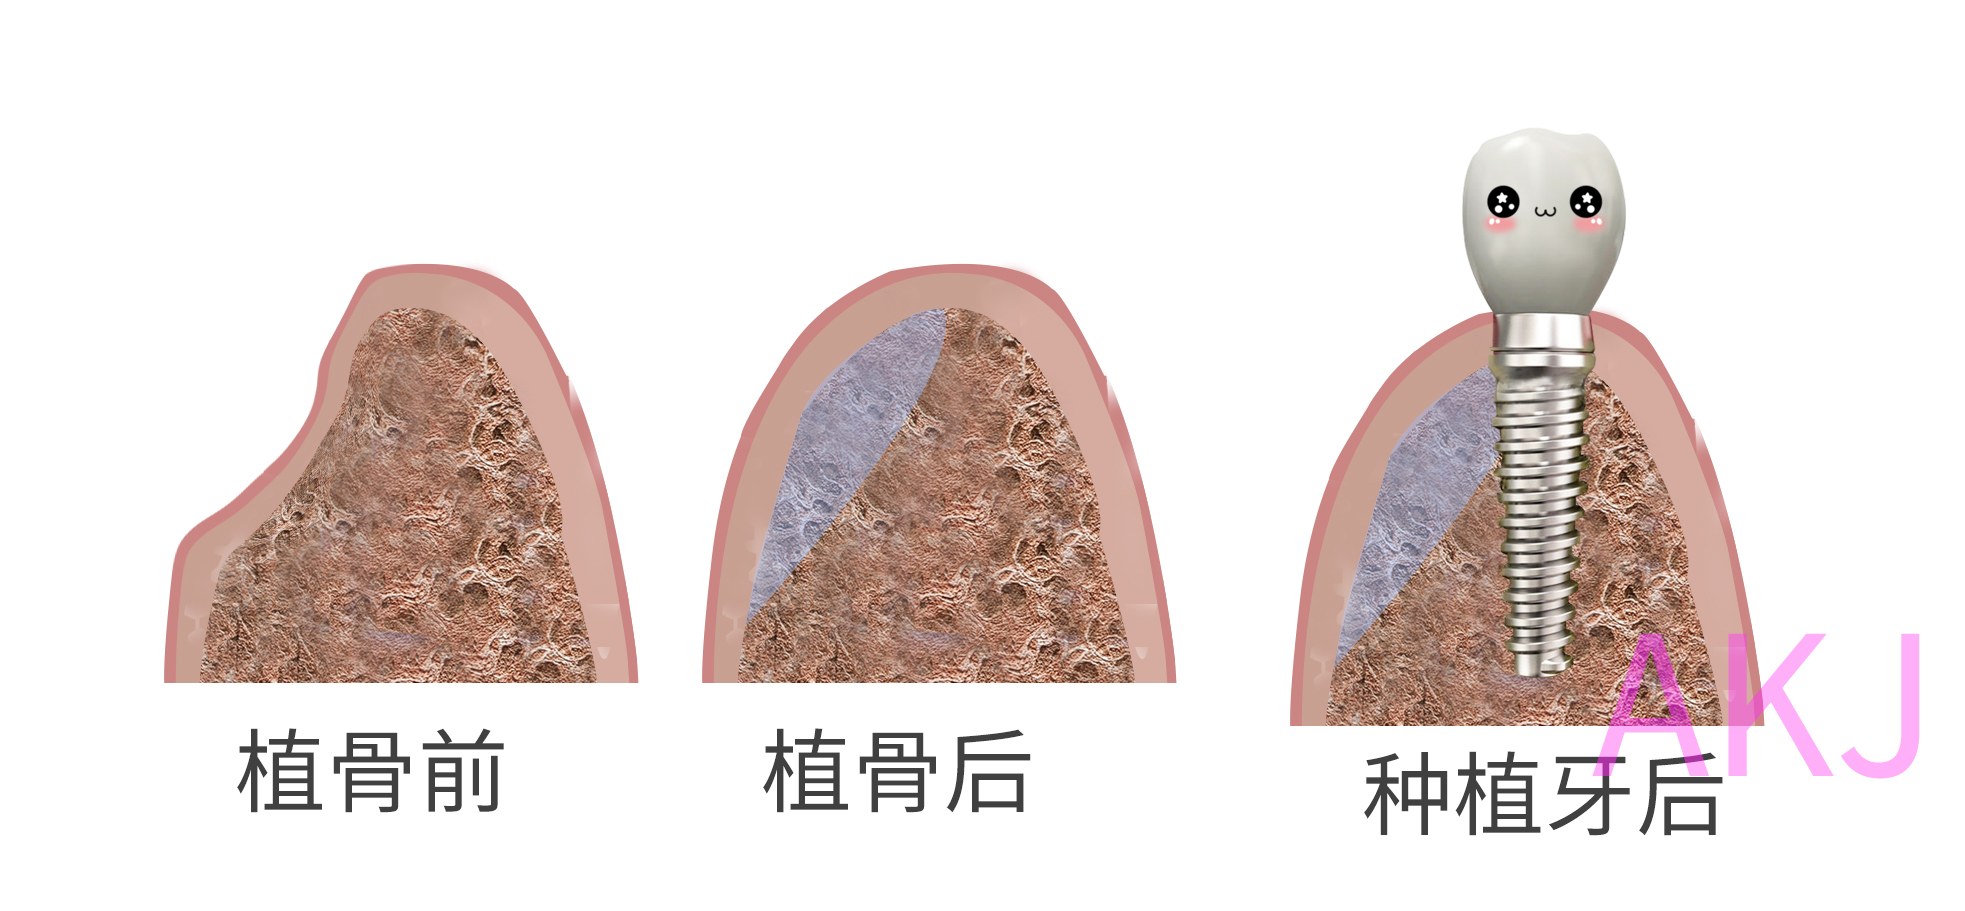 牙齿缺失是什么原因导致的呢——广州德伦口腔